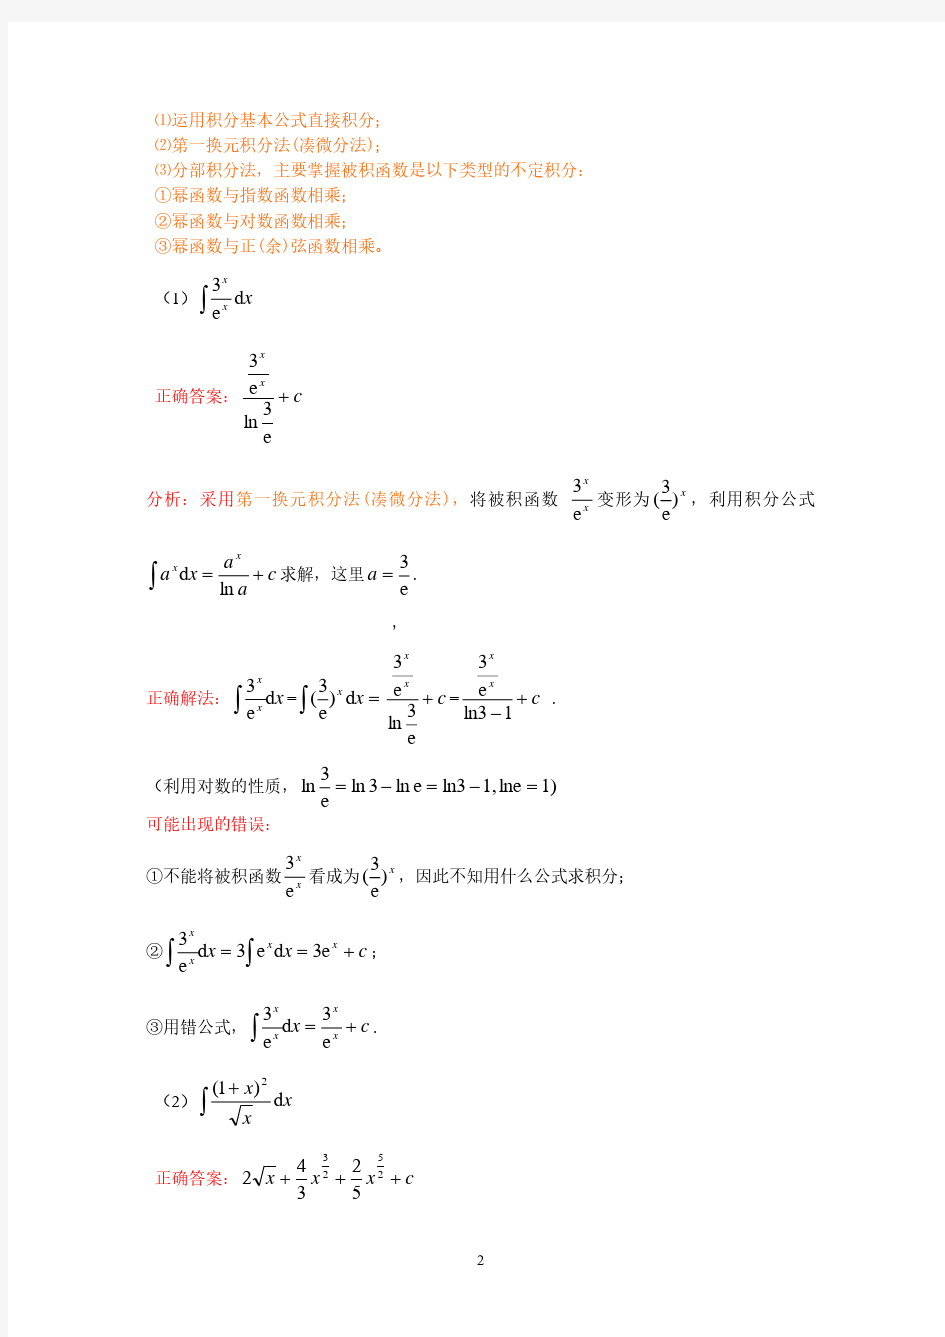 经济数学基础作业2(2020年10月整理).pdf